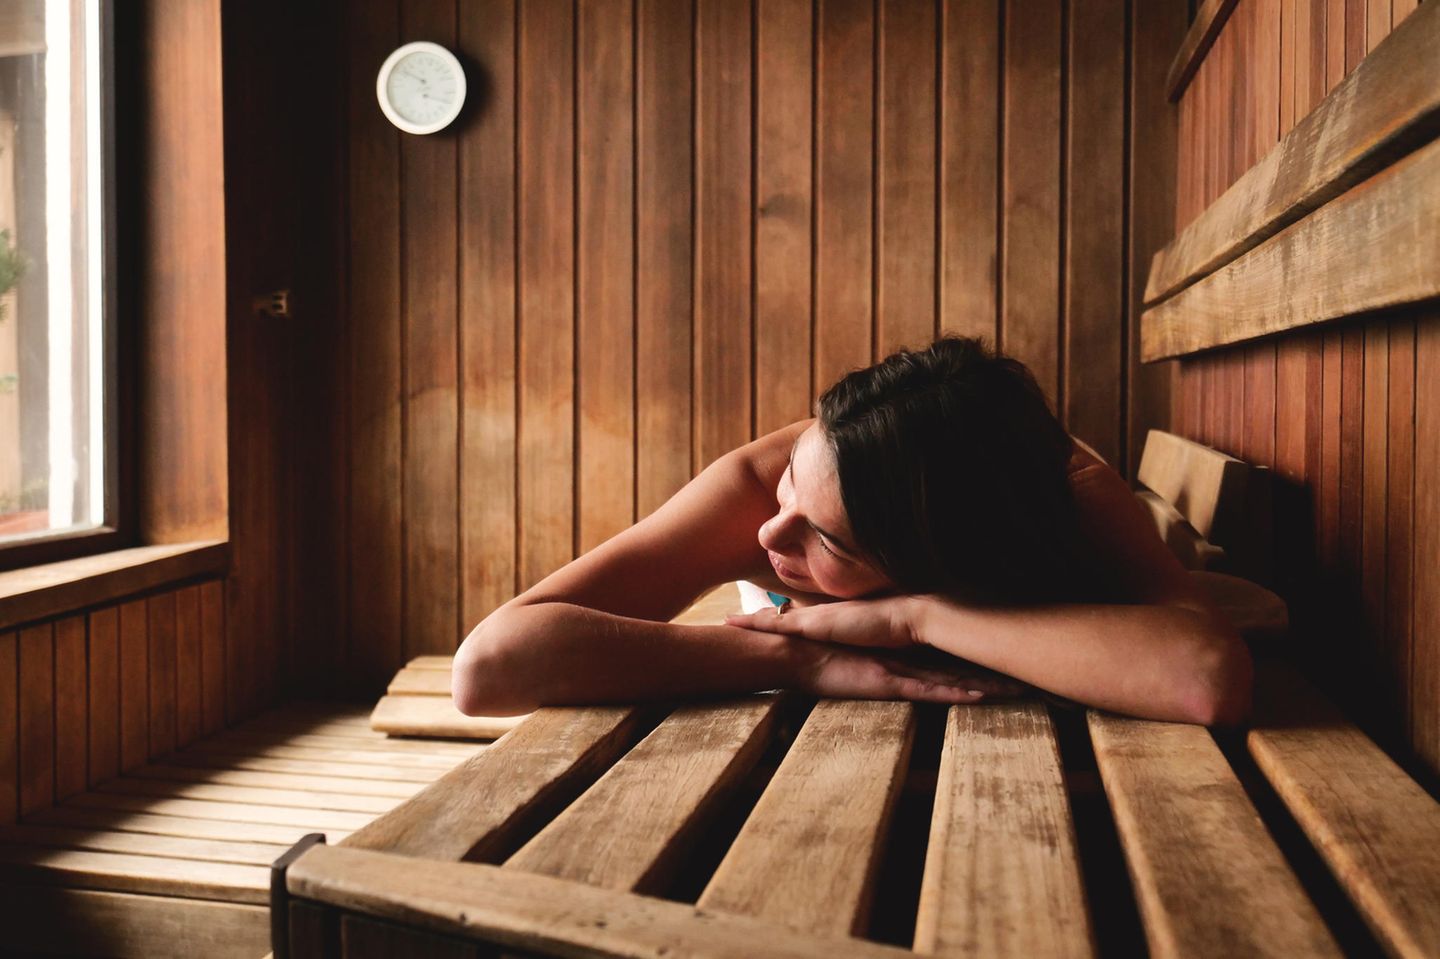 Nackt in der Sauna: Frau sauniert im Liegen